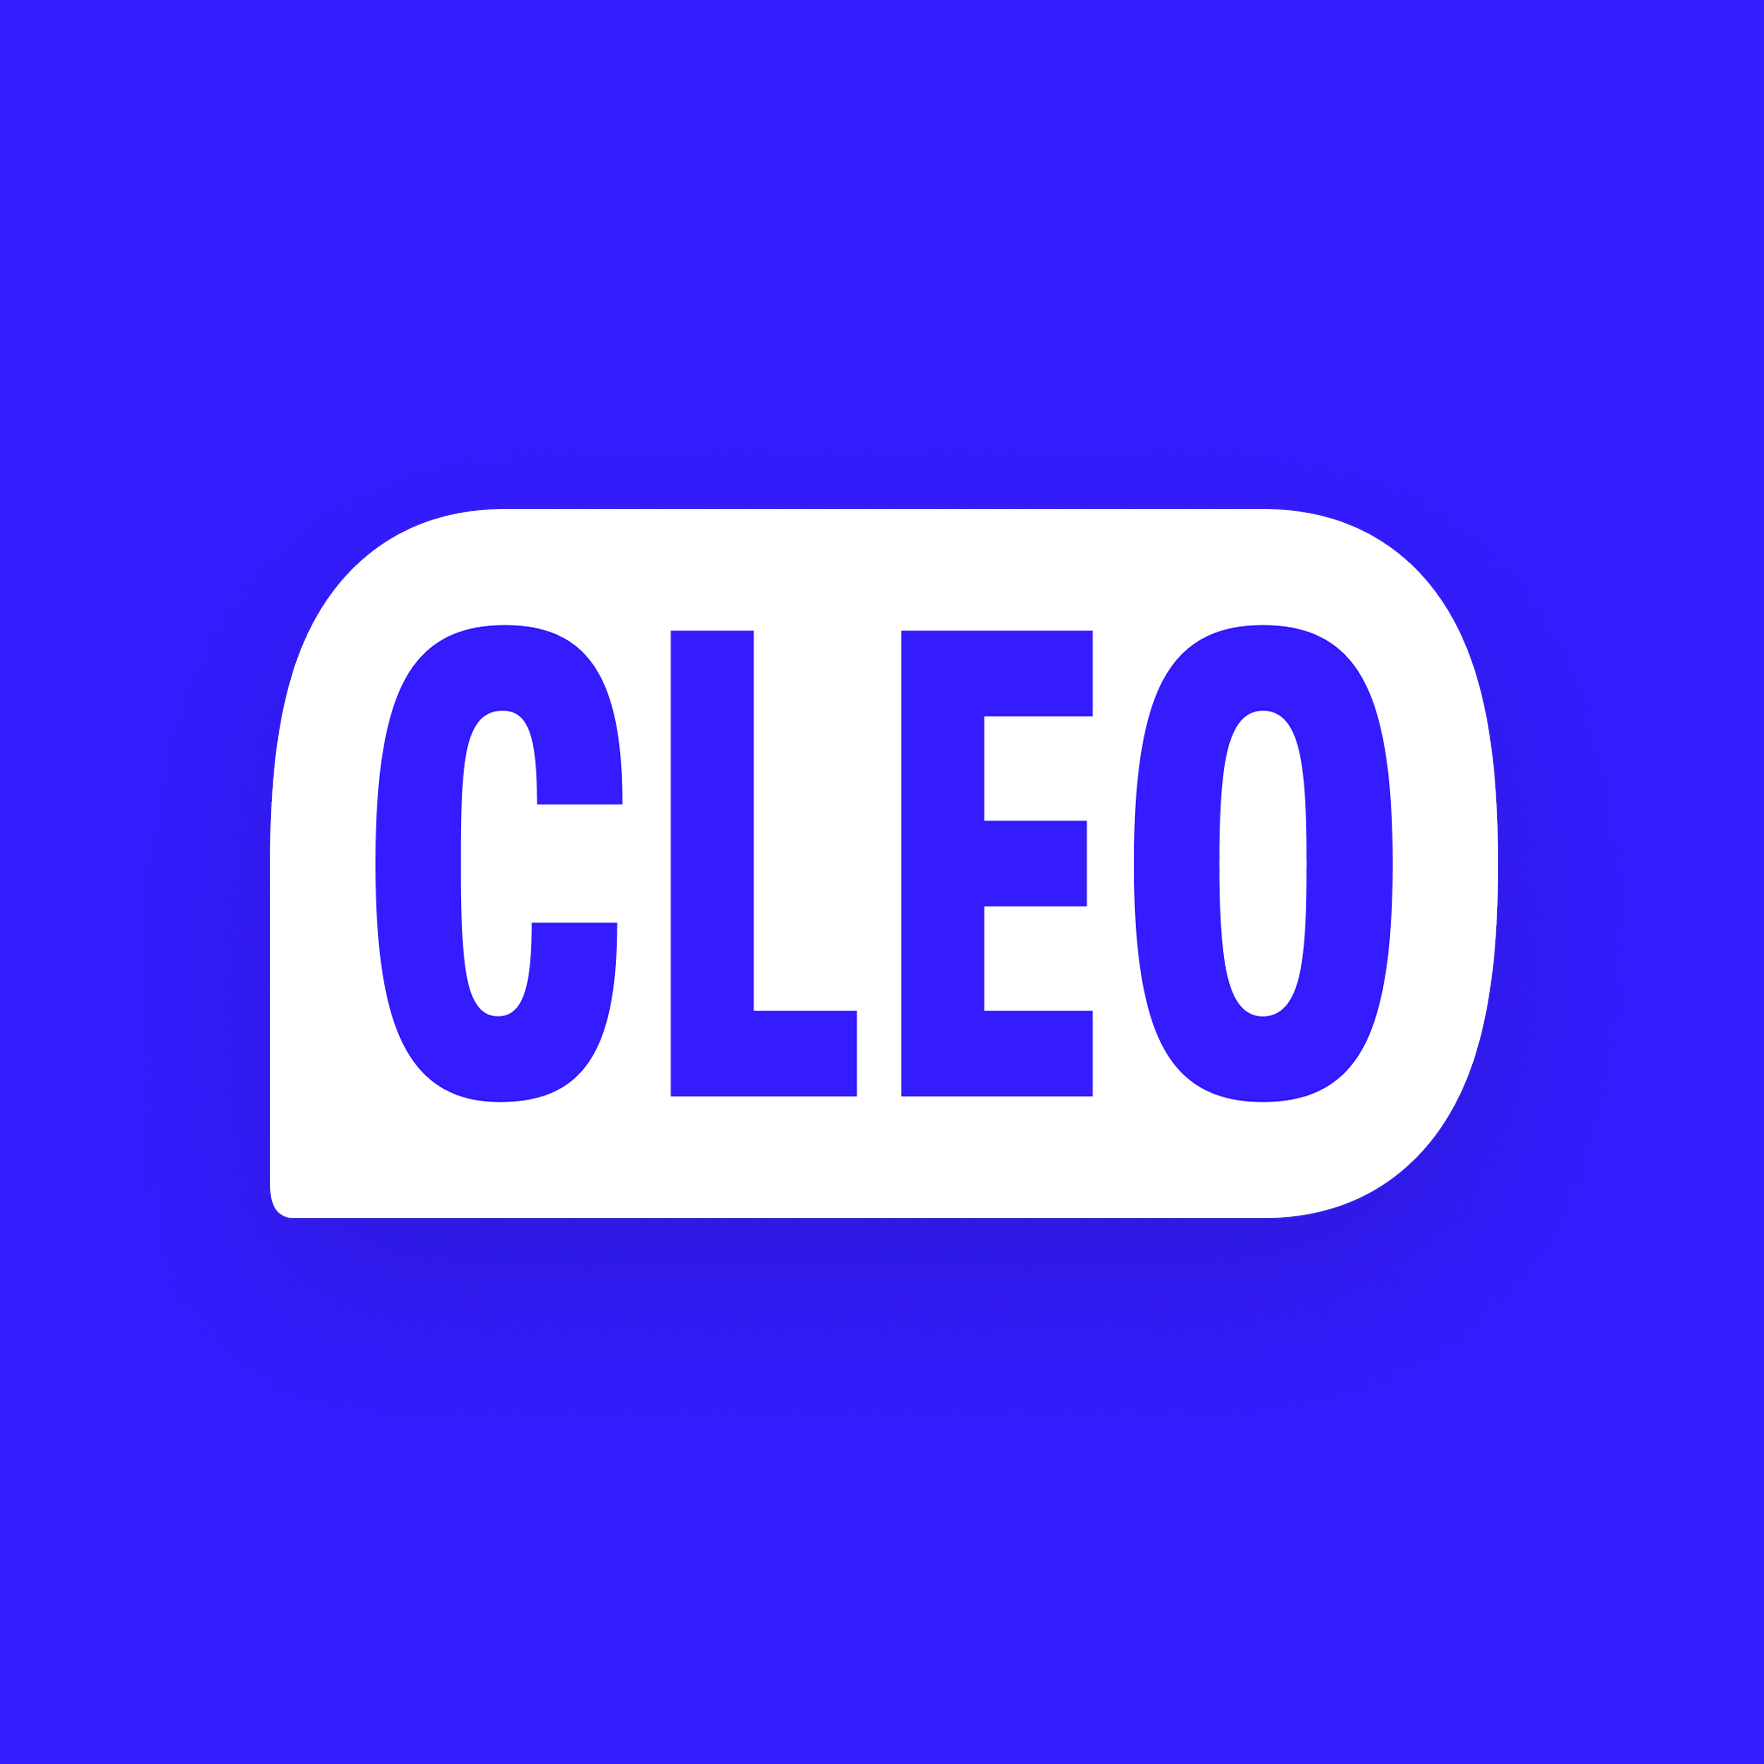 Company logo of Cleo